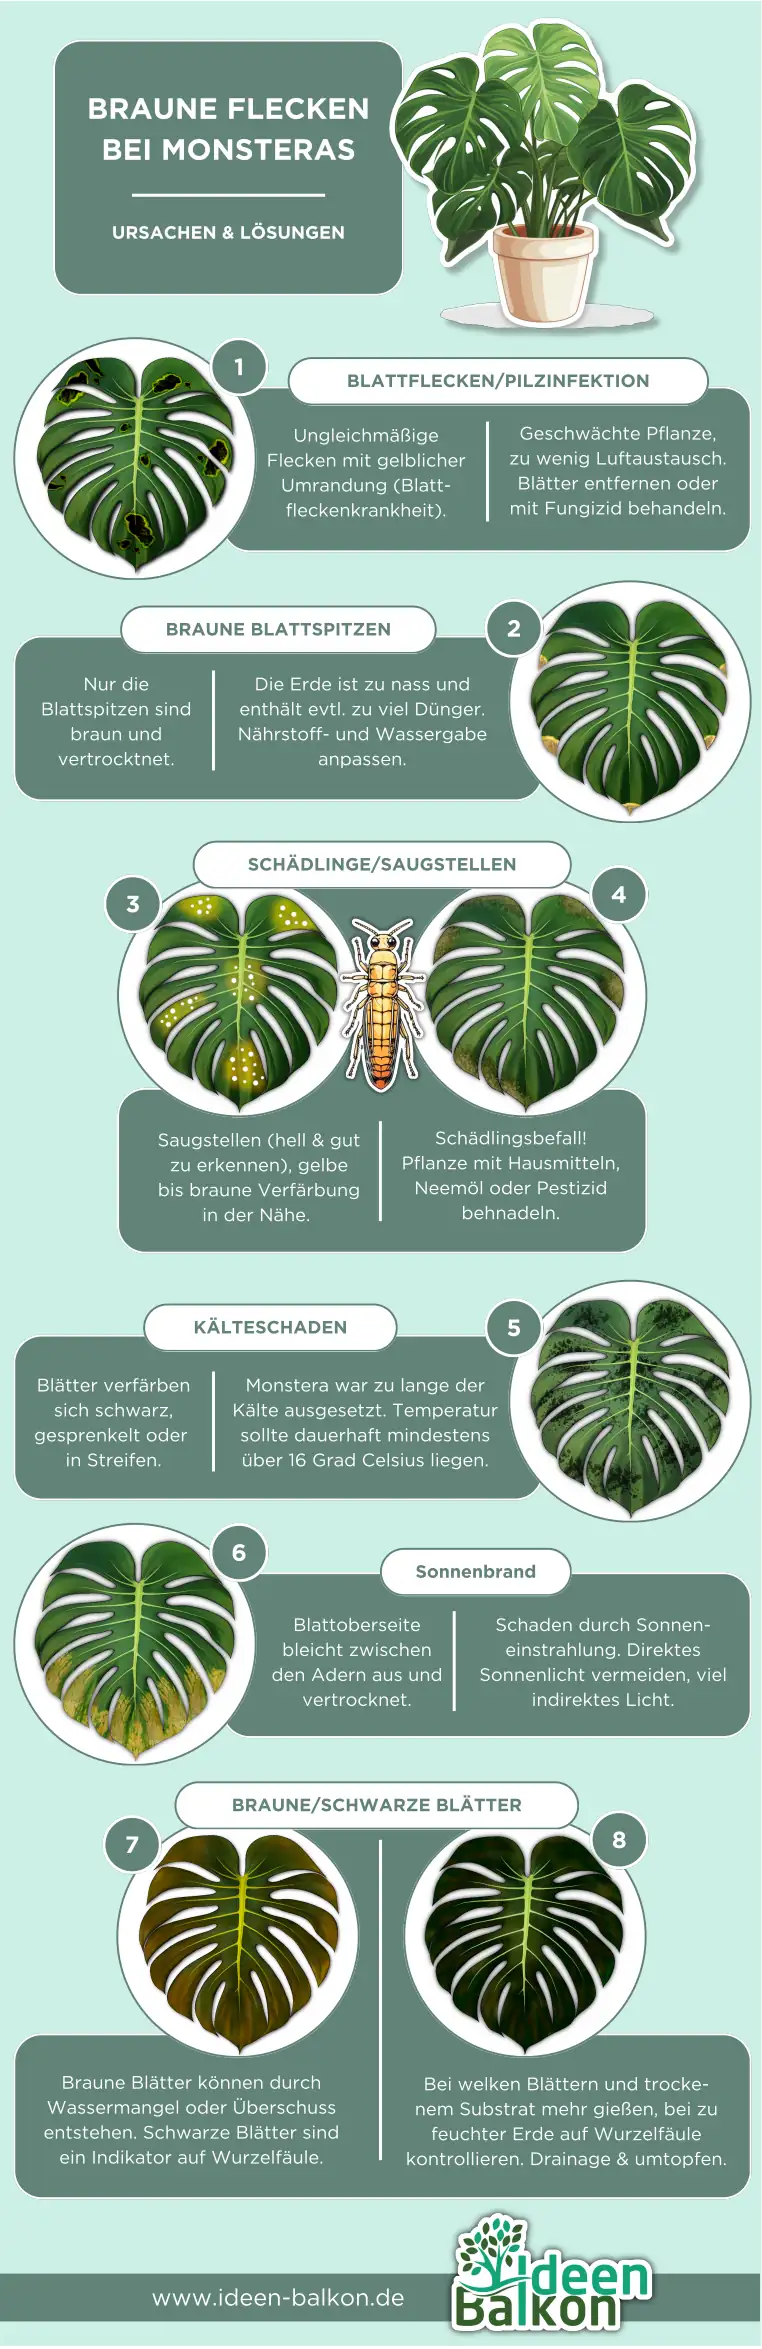 monstera braune flecken infografik blattfleckenkrankheit braune spitzen, thripse schädlinge, kälteschaden, sonnenbrand